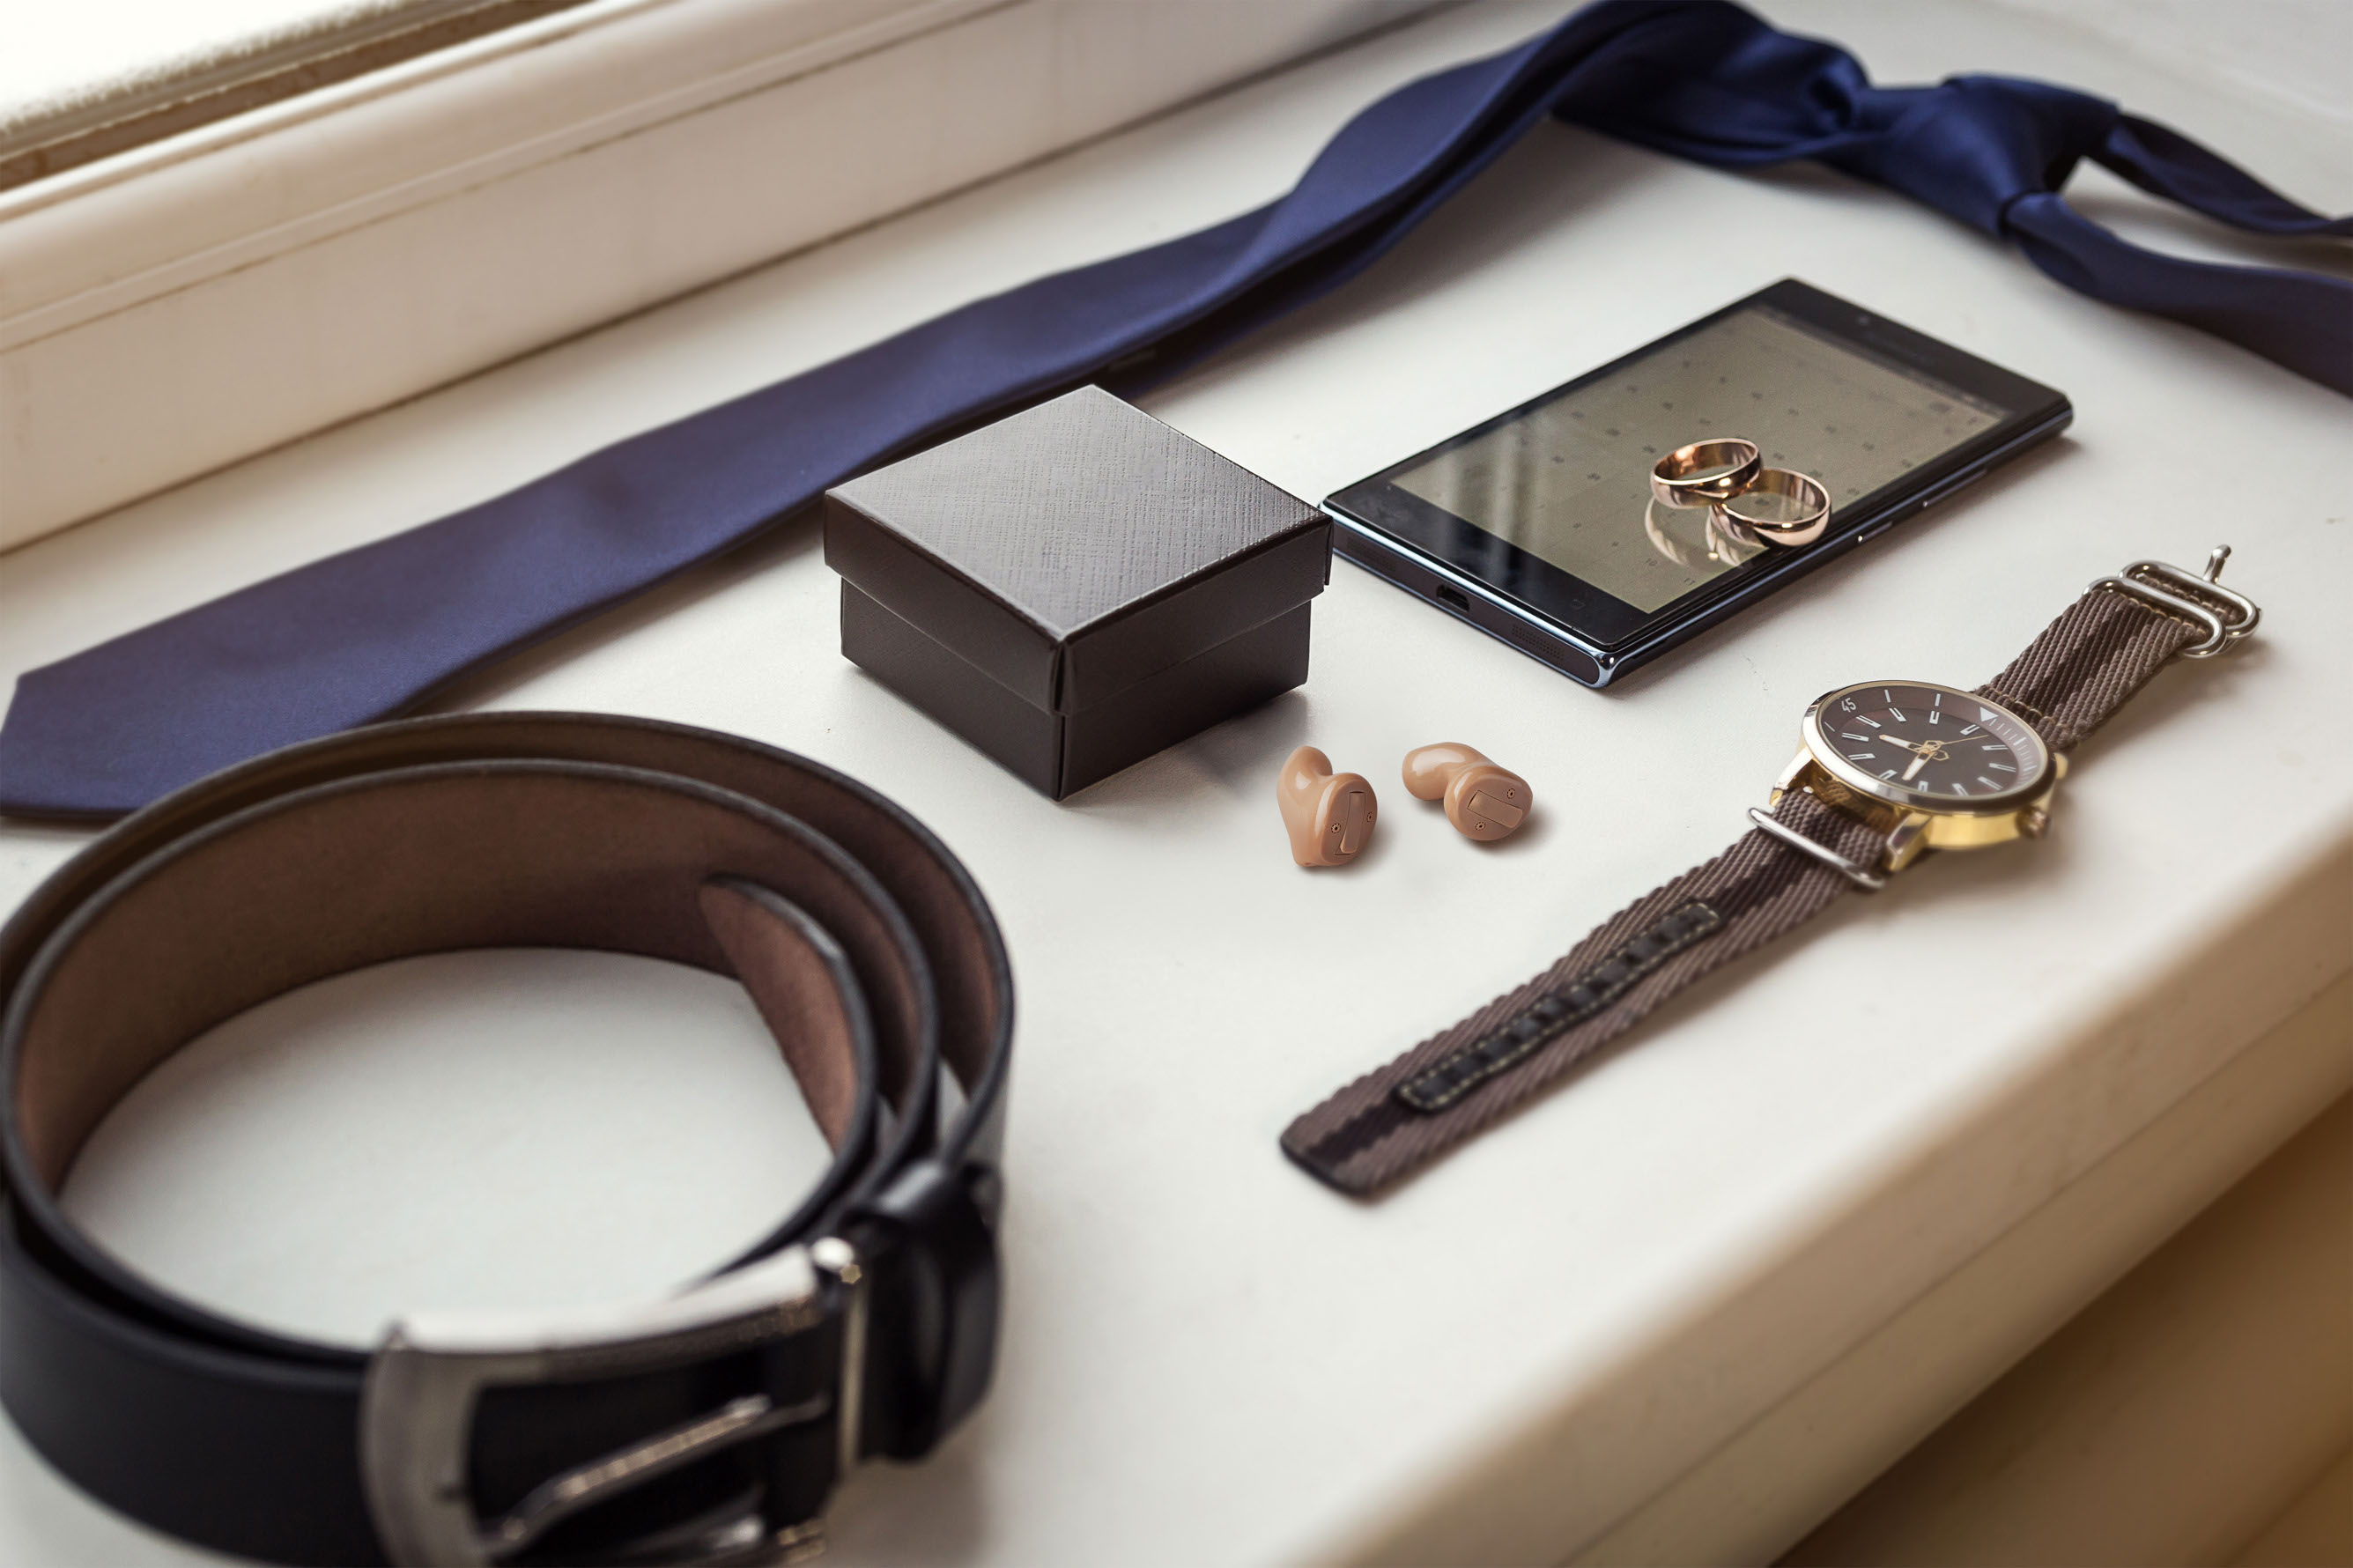 zwei winzige, teilweise transparente Hörgeräte zwischen männlichen Luxusartikeln wie Gürtel, Krawatte, Armbanduhr und Ringen